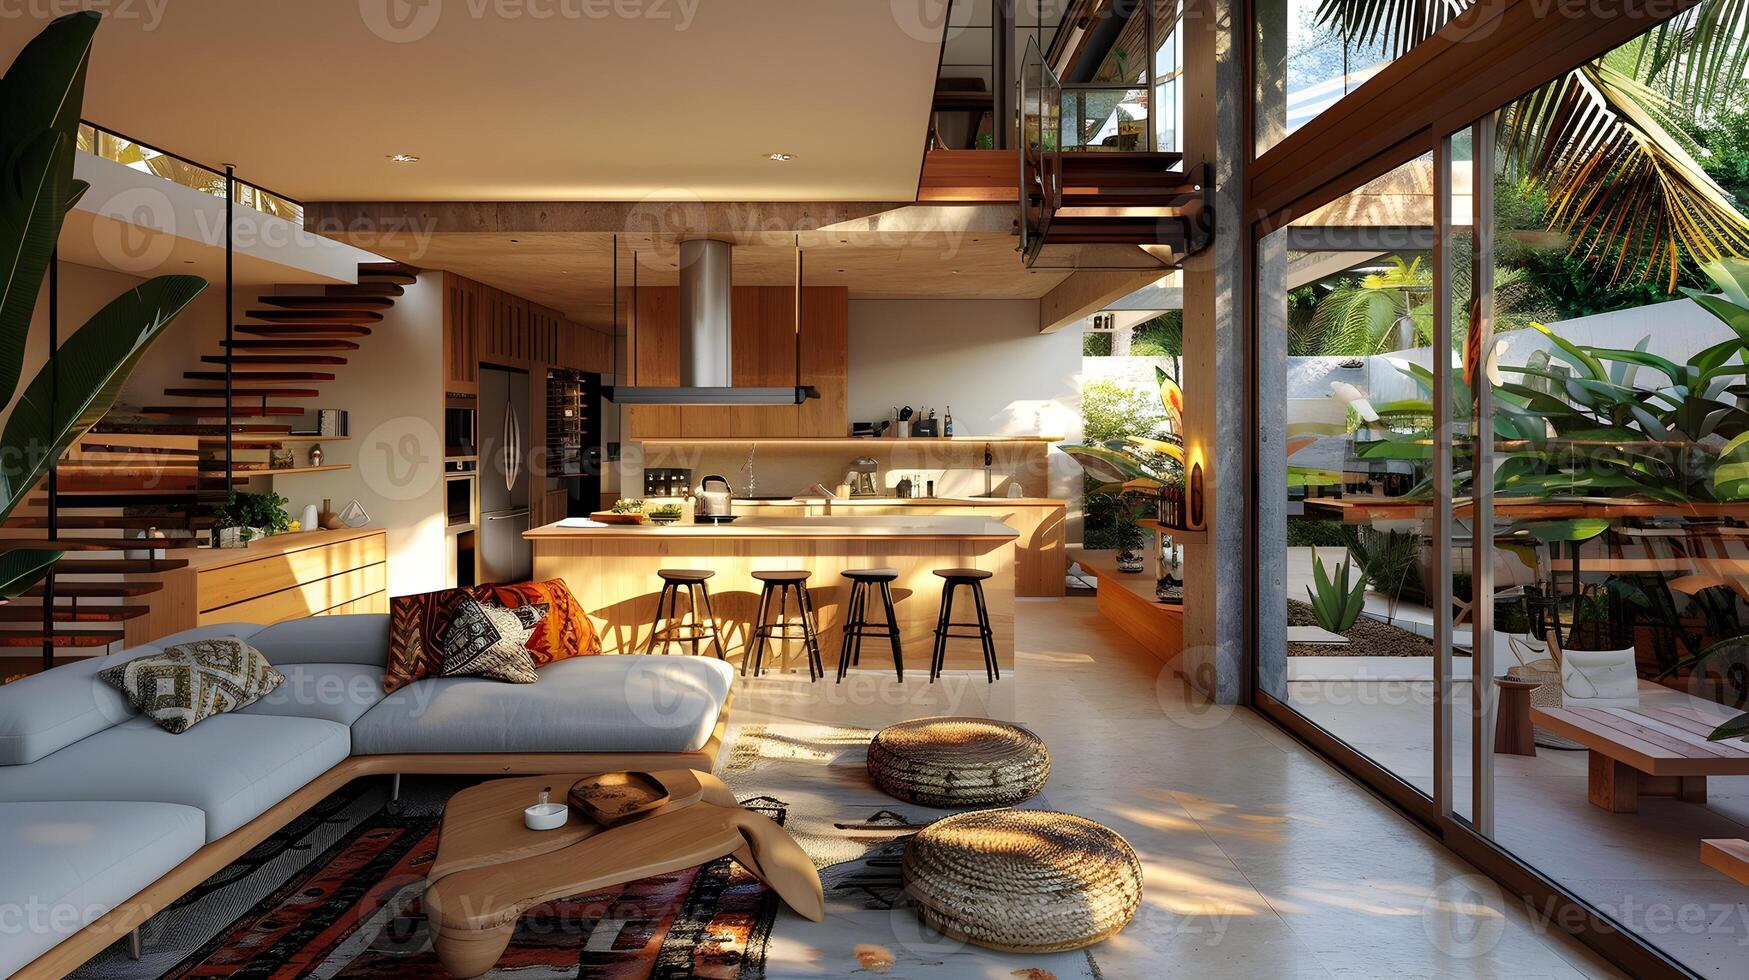 moderno Tulum estilo casa interior com aberto cozinha e tropical plantas foto